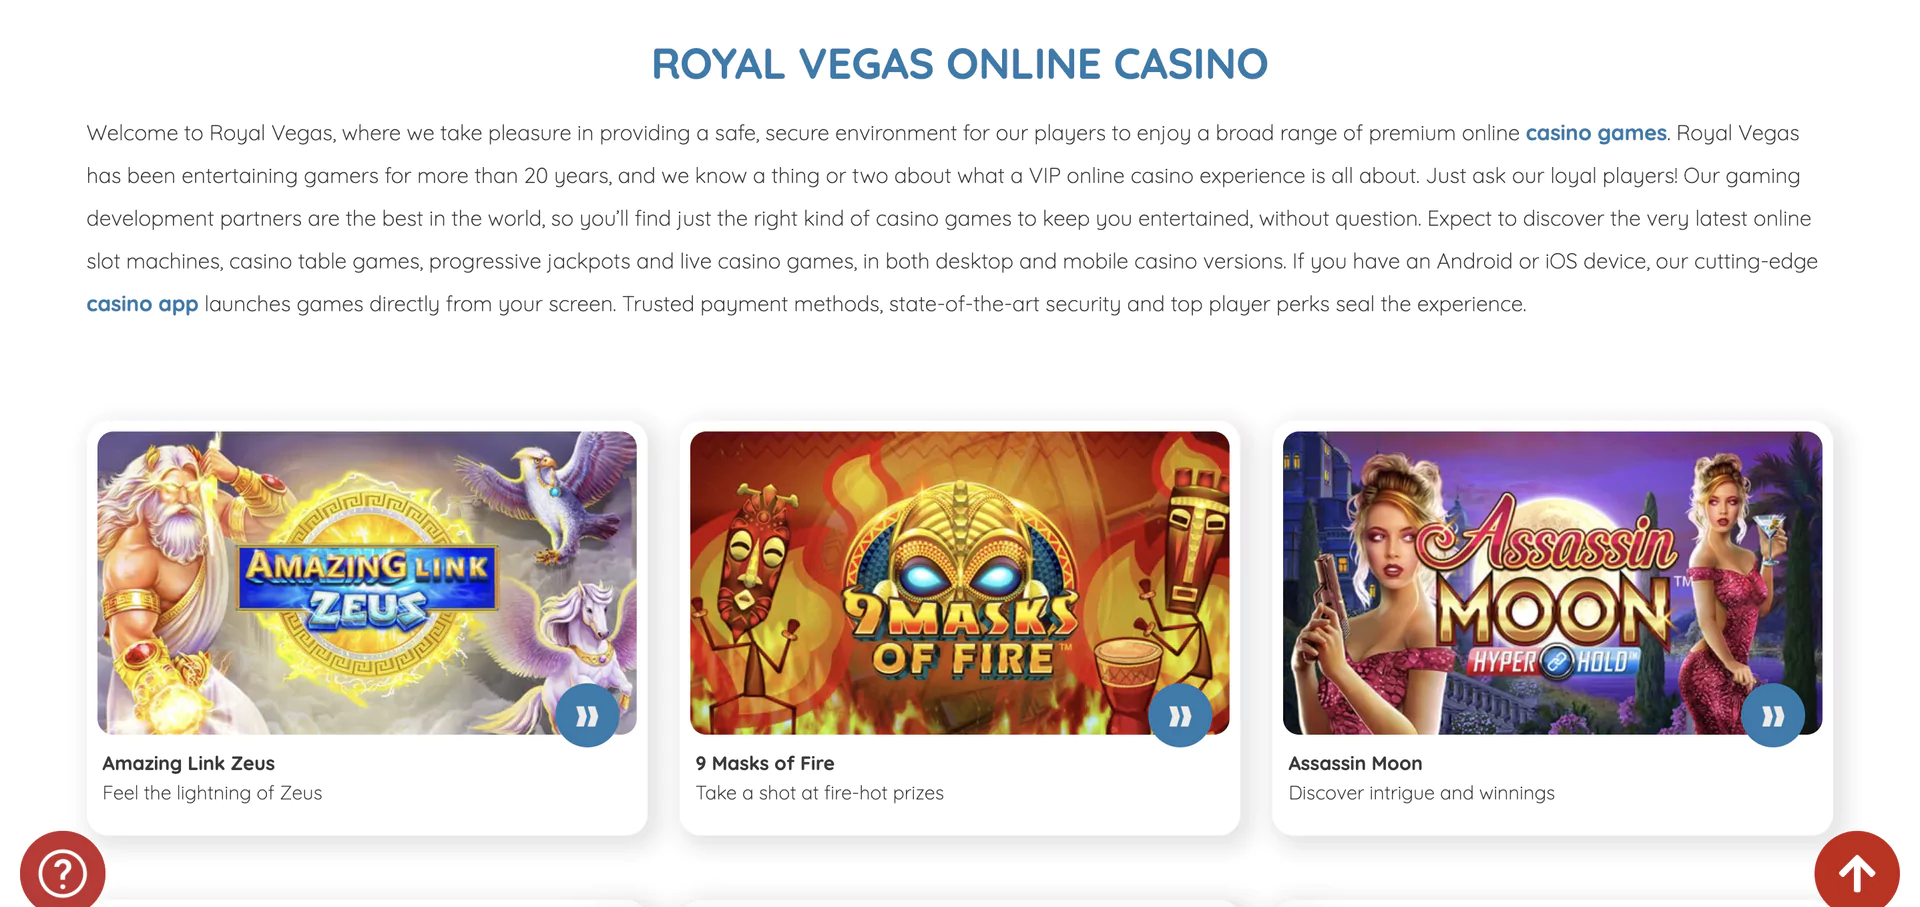 Main page at Royal Vegas Casino